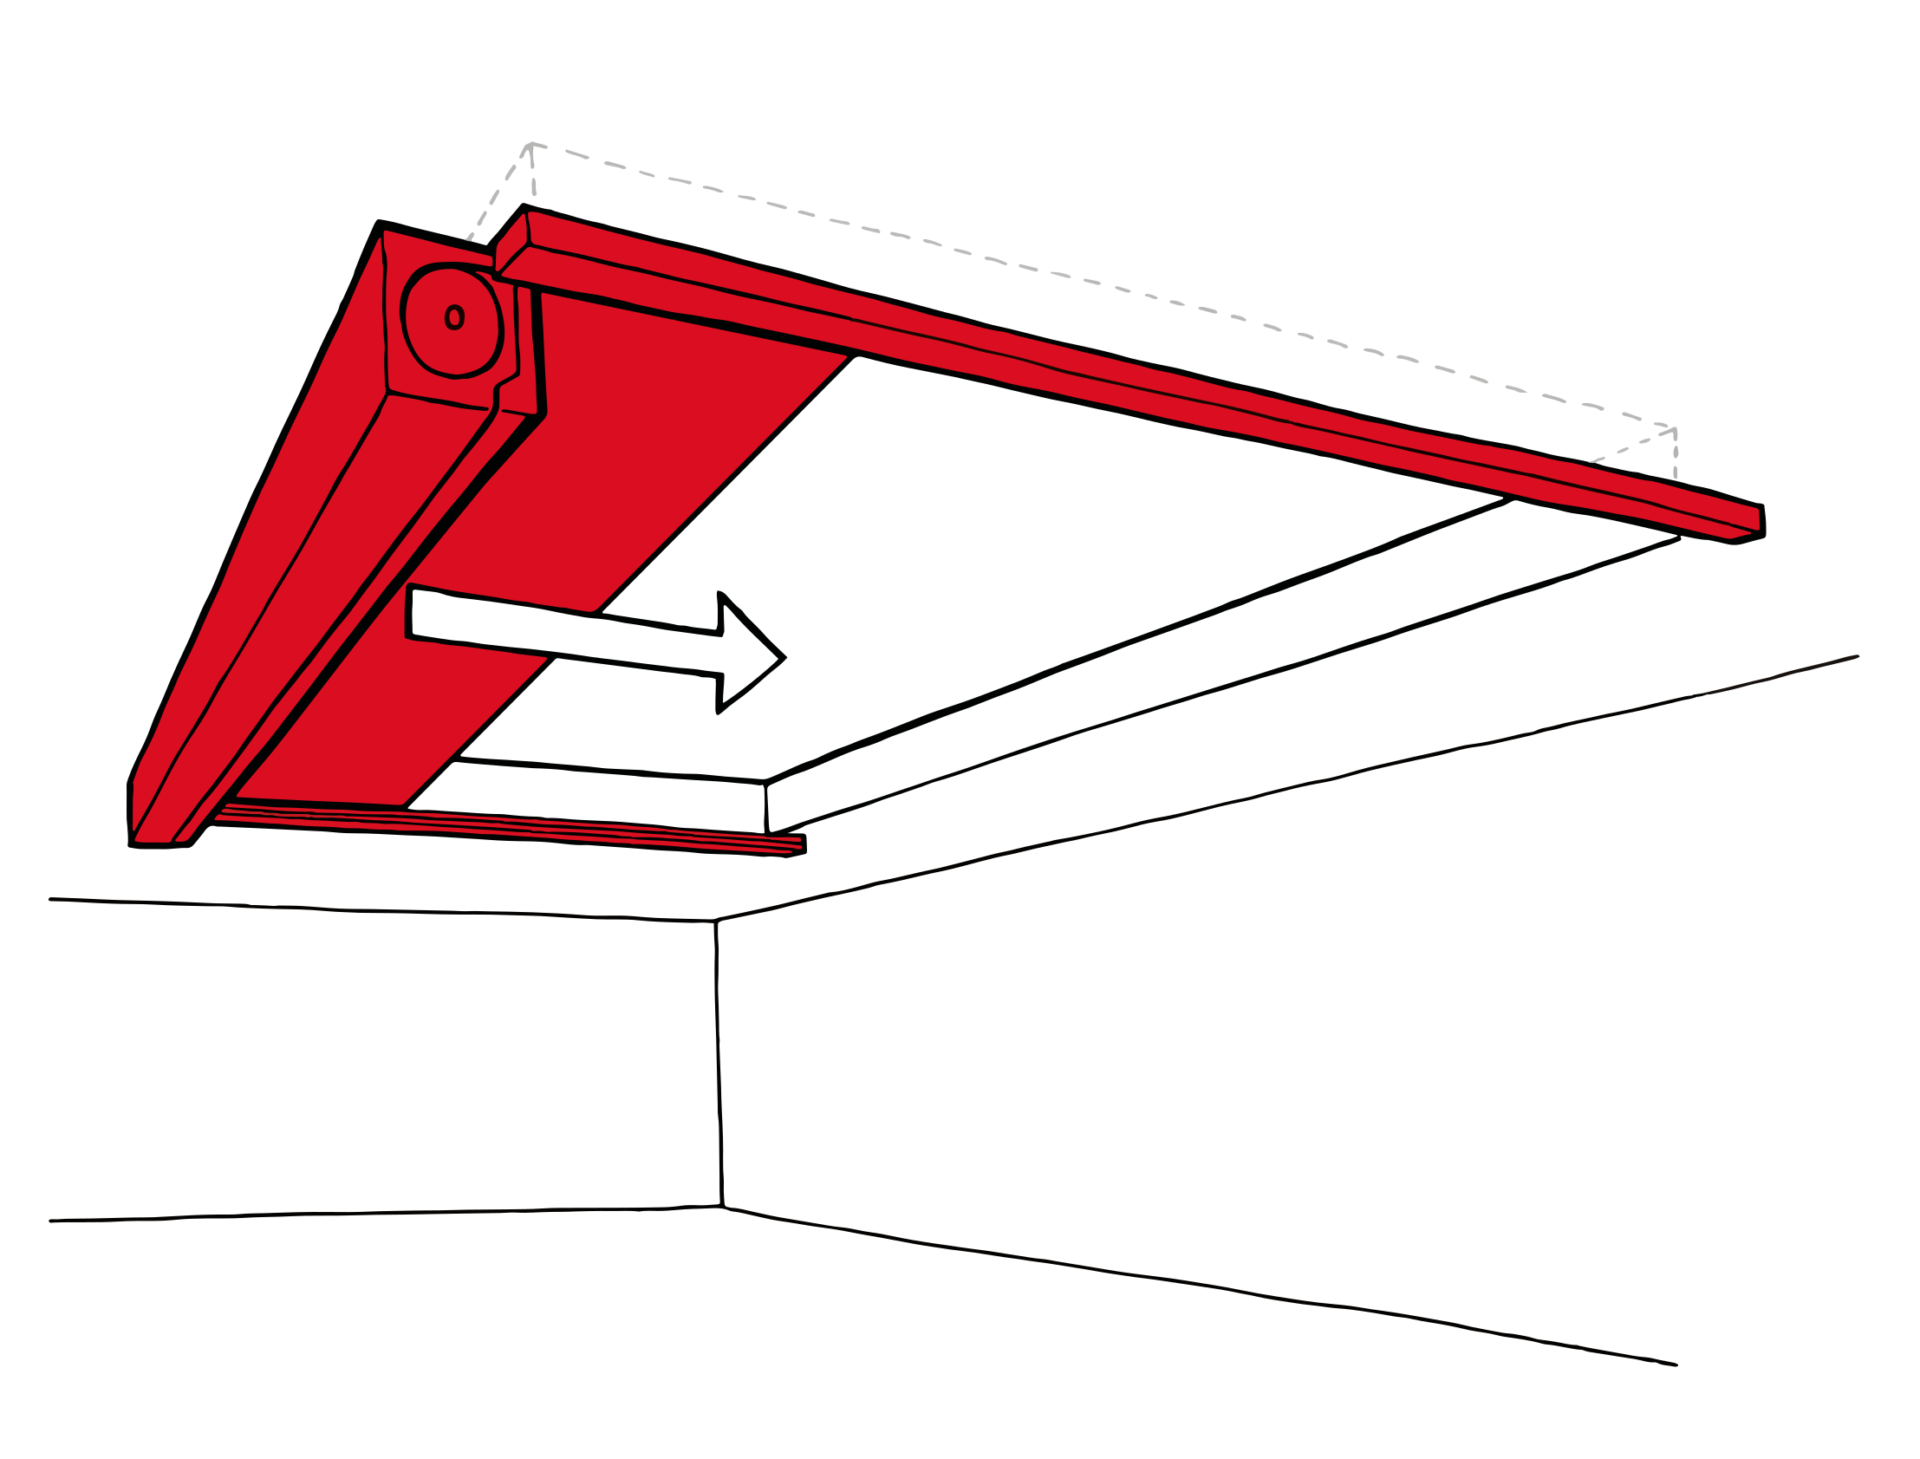 Imagem do tipo mockup mostrando o sentido de fechamento da cortina corta-fogo modelo fibershield-HC